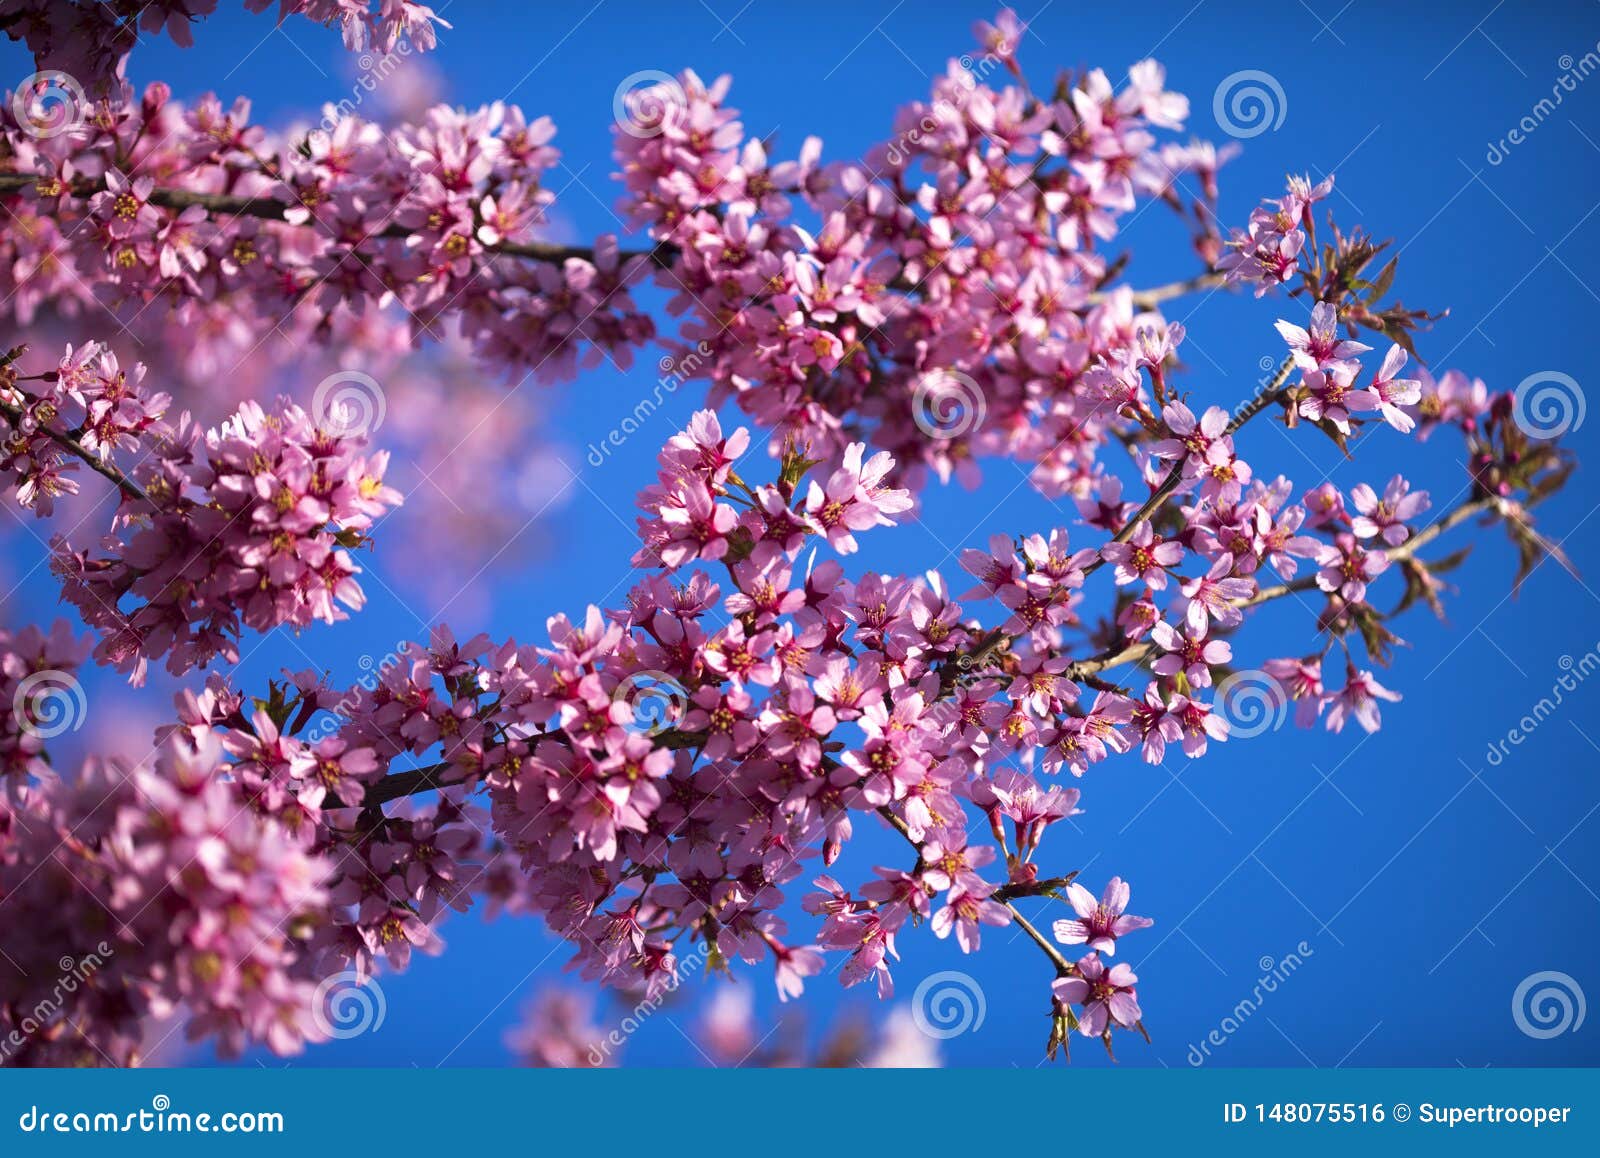 oriental cherry blooming